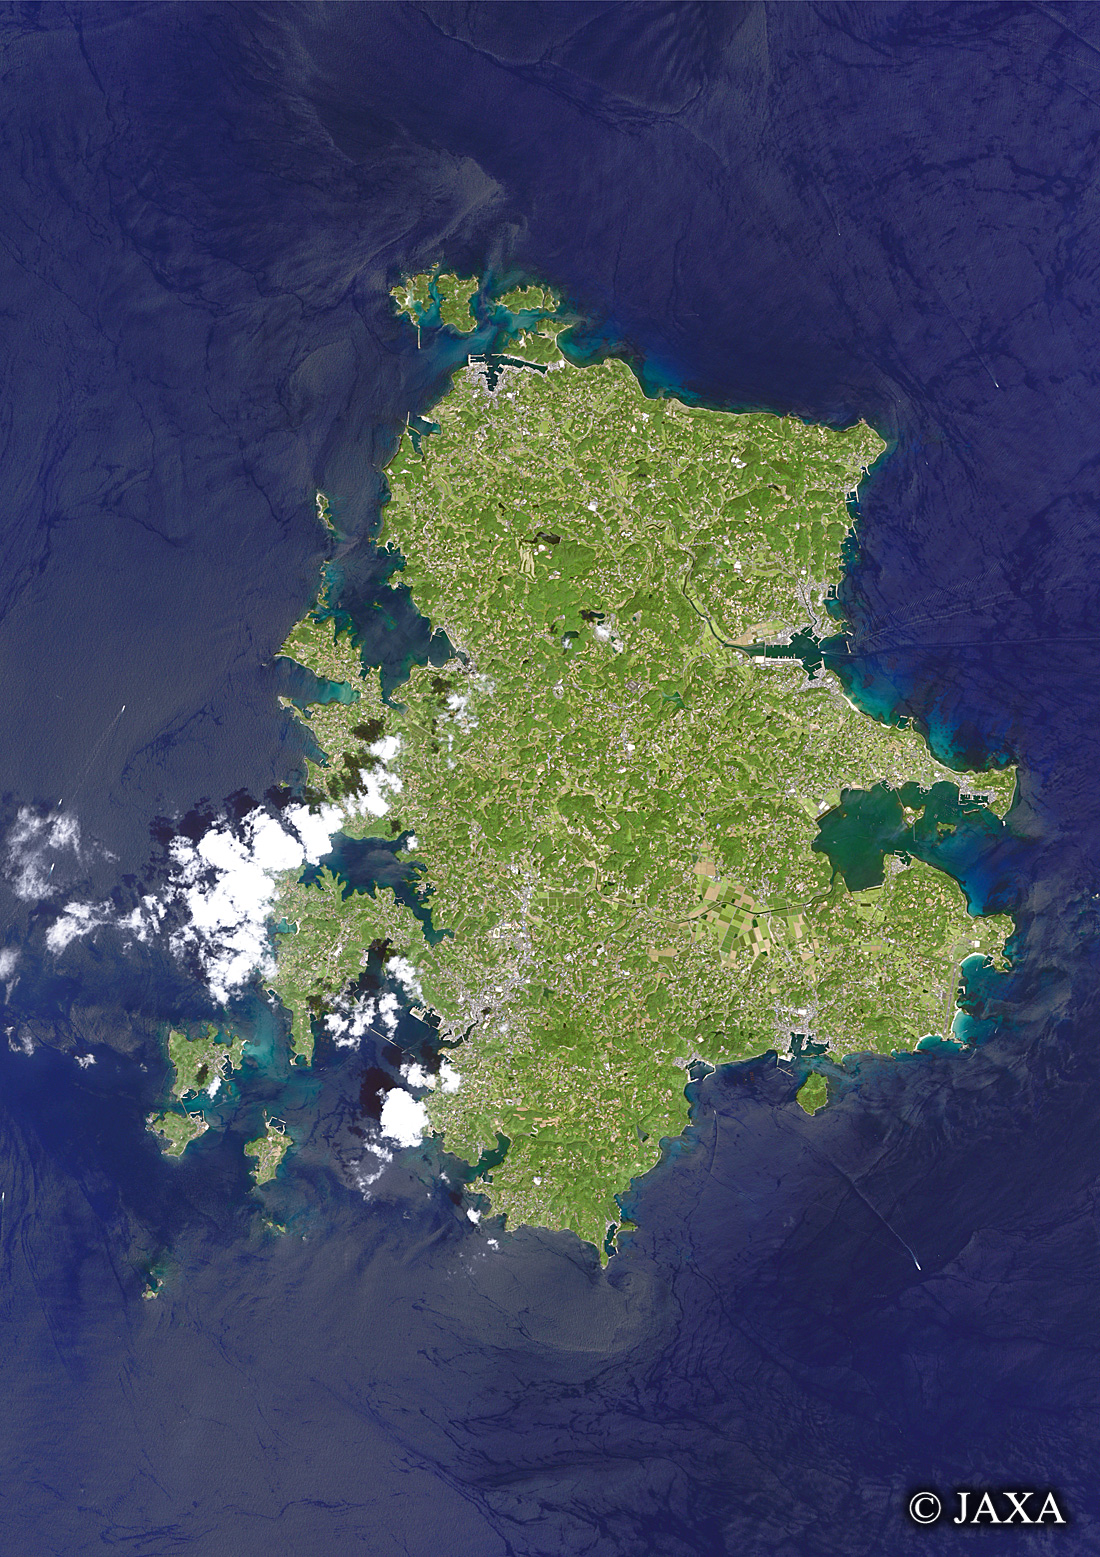 だいちから見た日本の都市 壱岐島:衛星画像